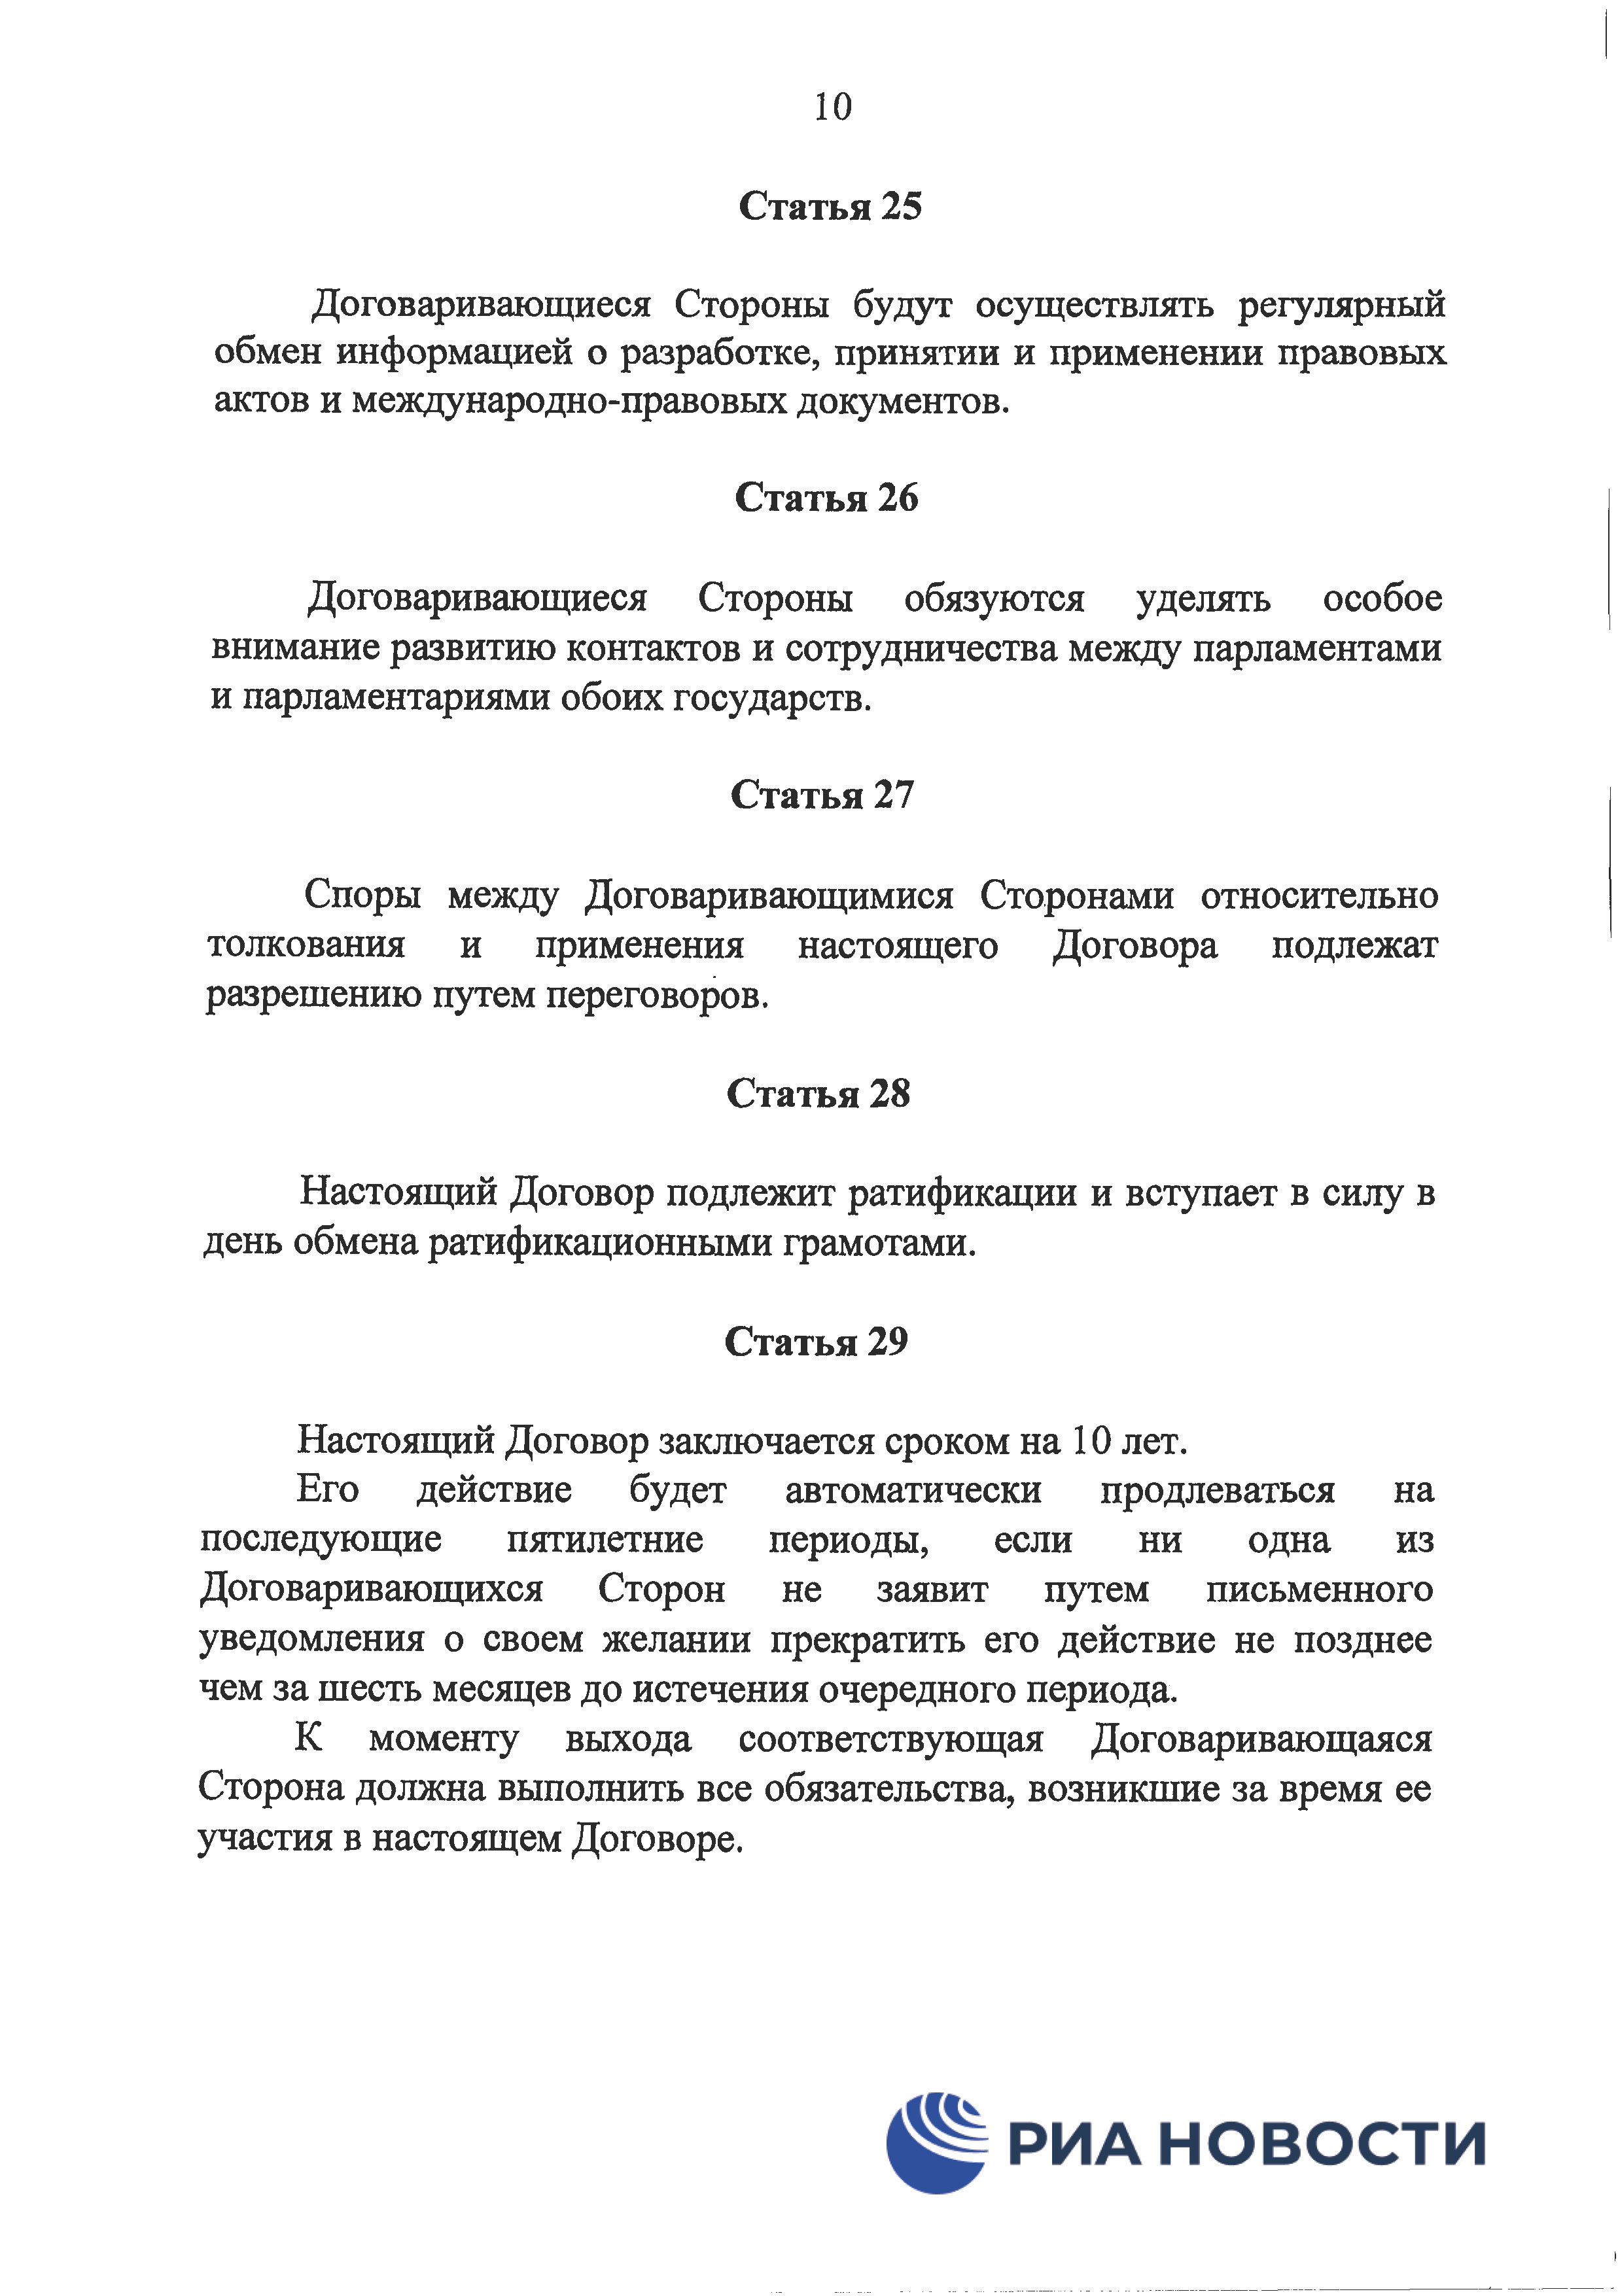 Договор о дружбе России с ДНР и ЛНР - страница 13